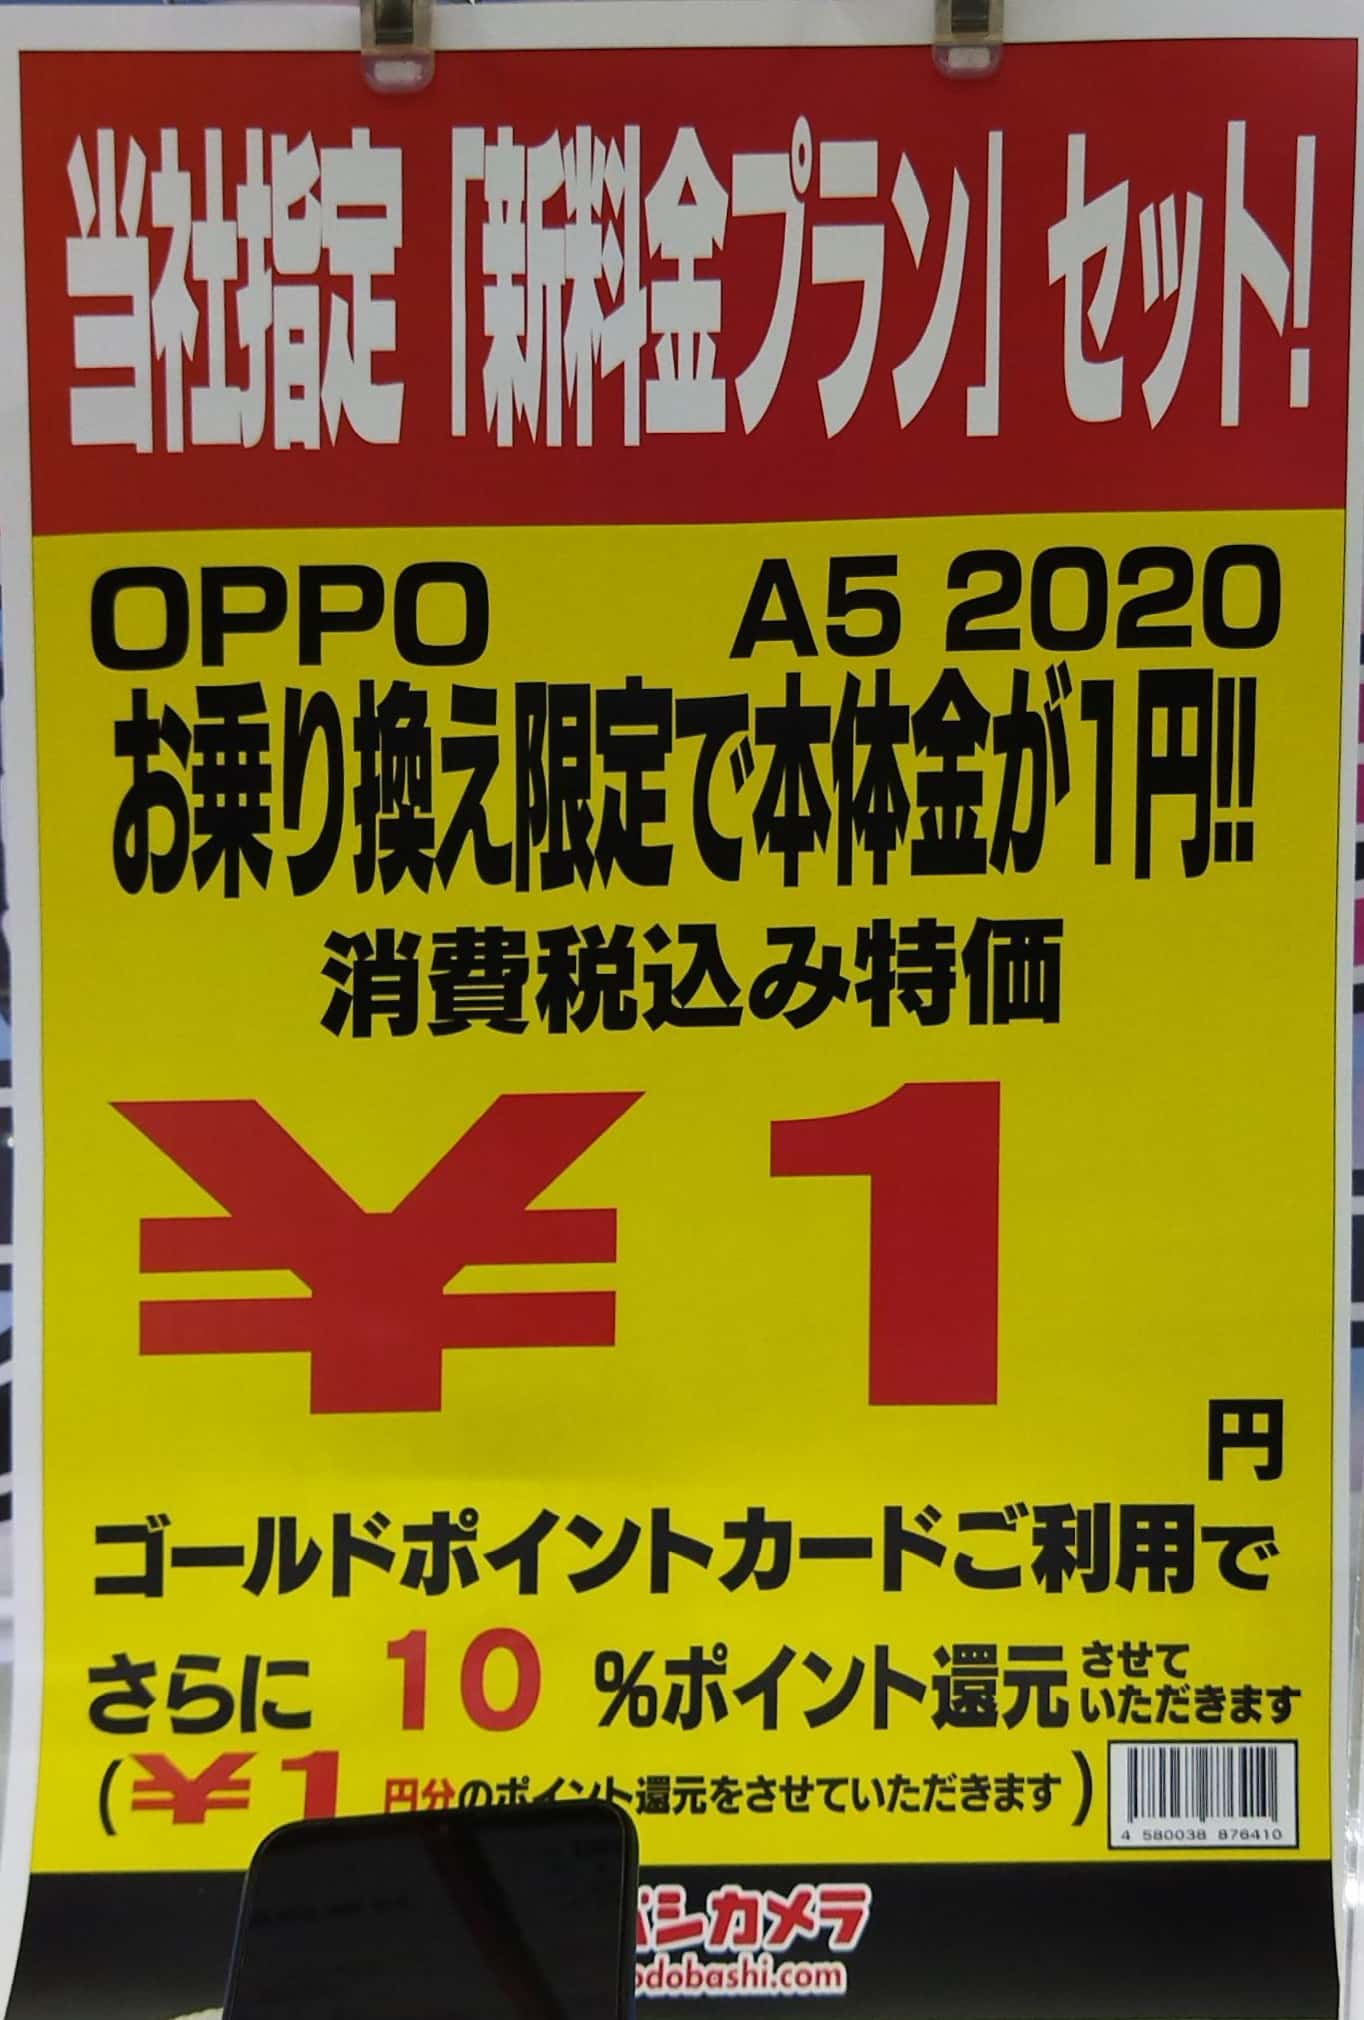 21年4月2日 金 ヨドバシカメラ梅田店でのキャンペーンの変化を確認しに行きました スマホの達人 スマフォの達人